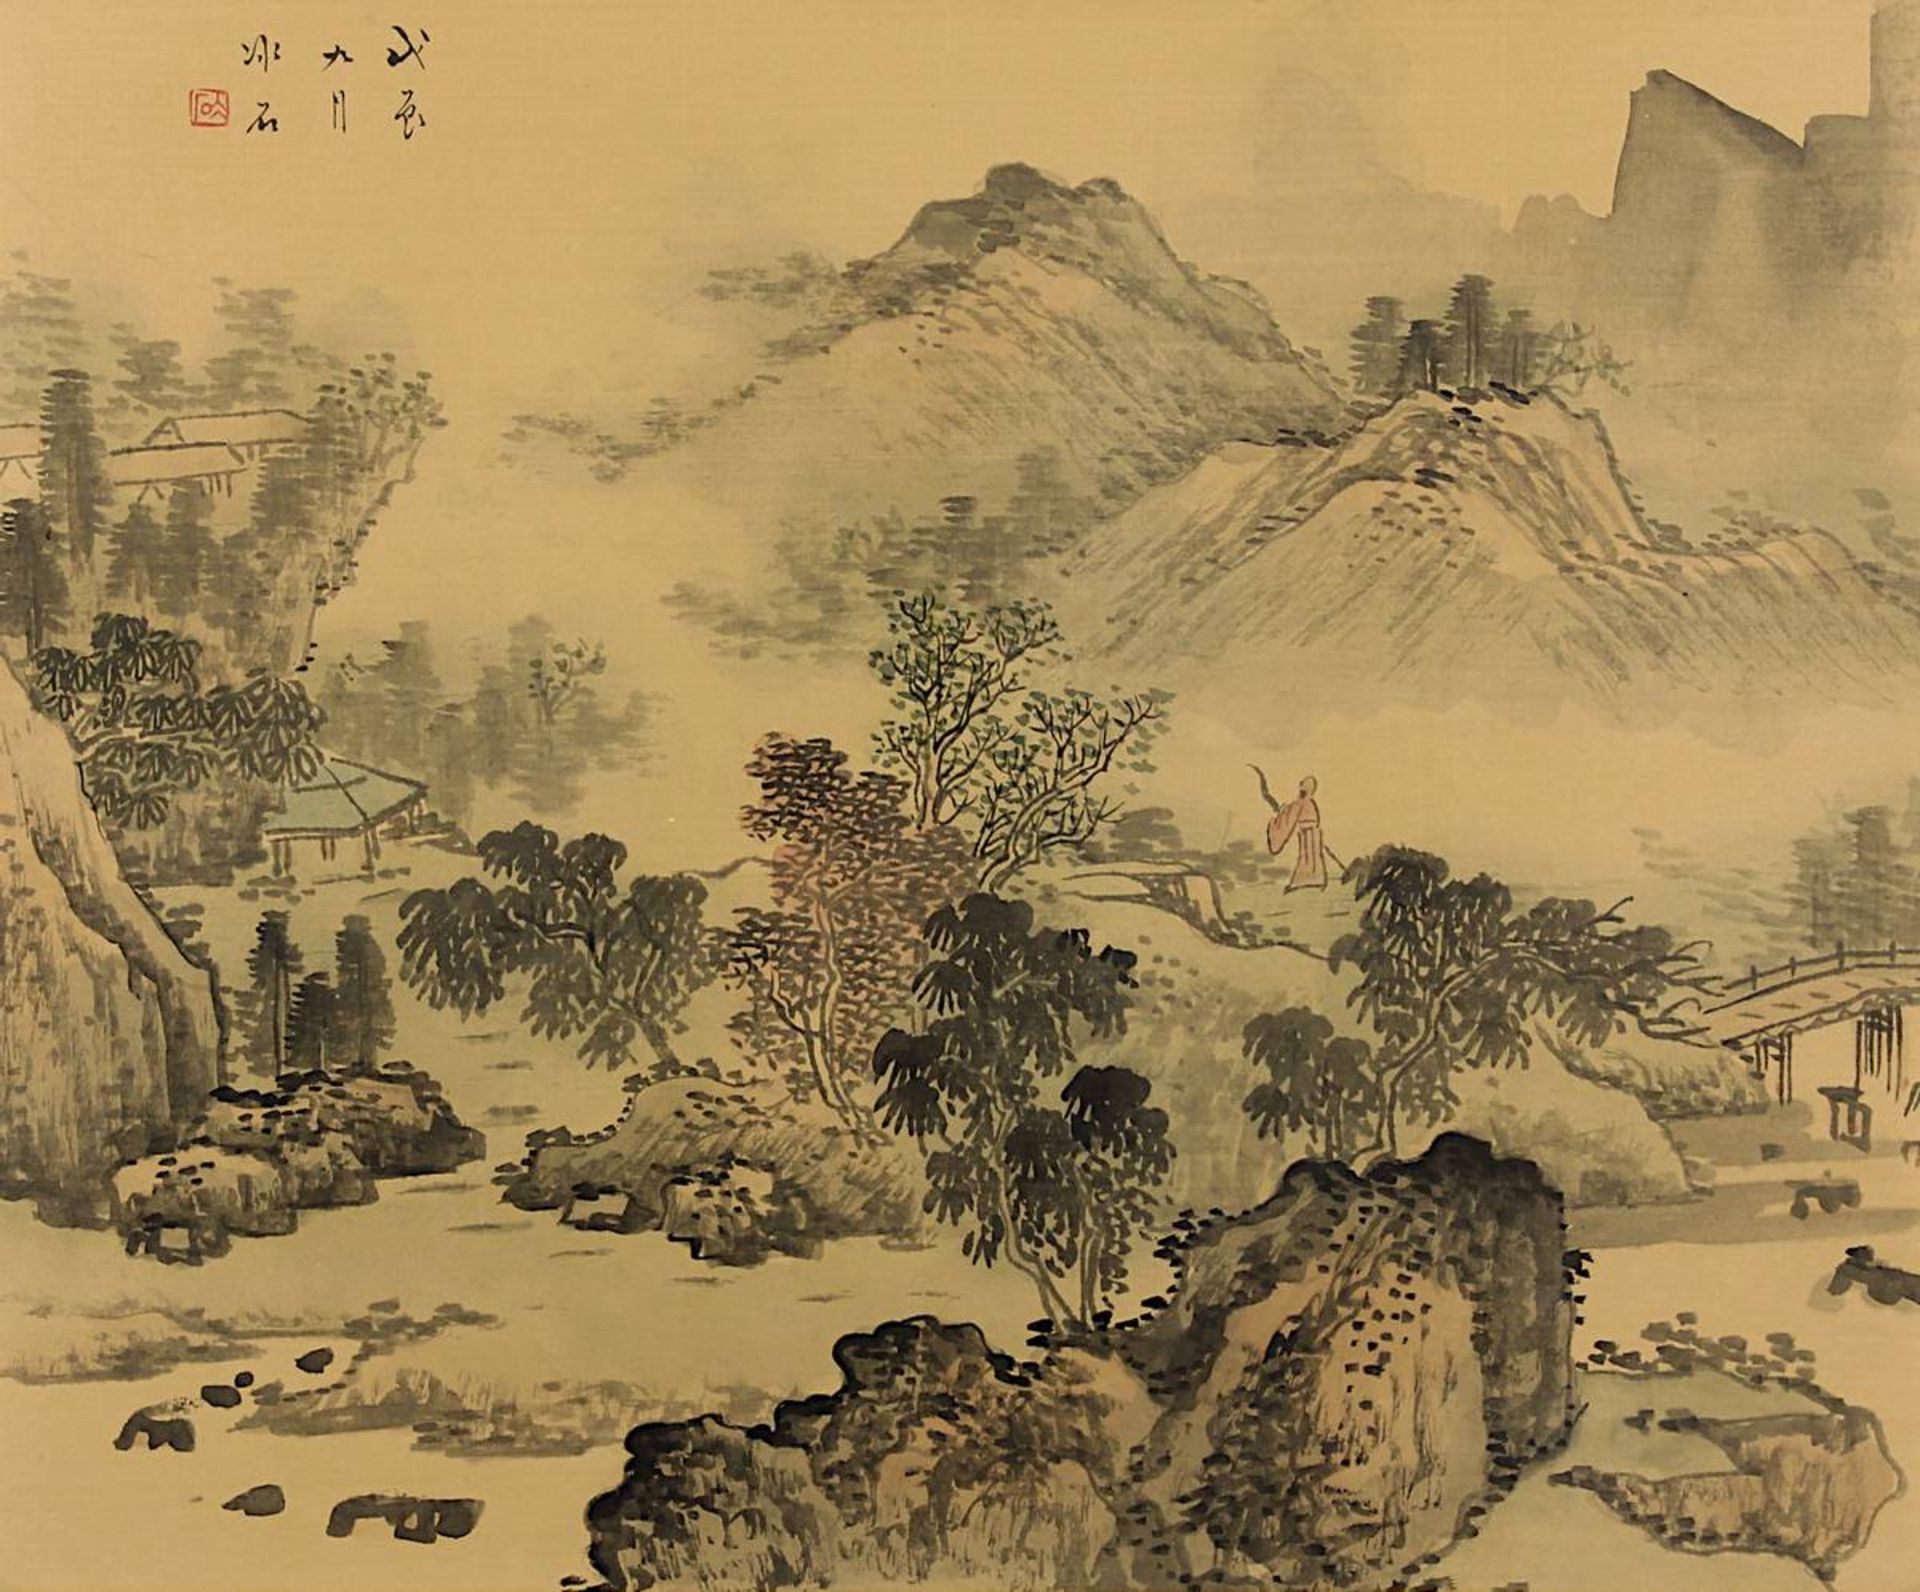 Chinesisches Landschaftsaquarell auf Seide, 19. Jh., in Grautönen und zartem Rot auf beigen - Image 2 of 2